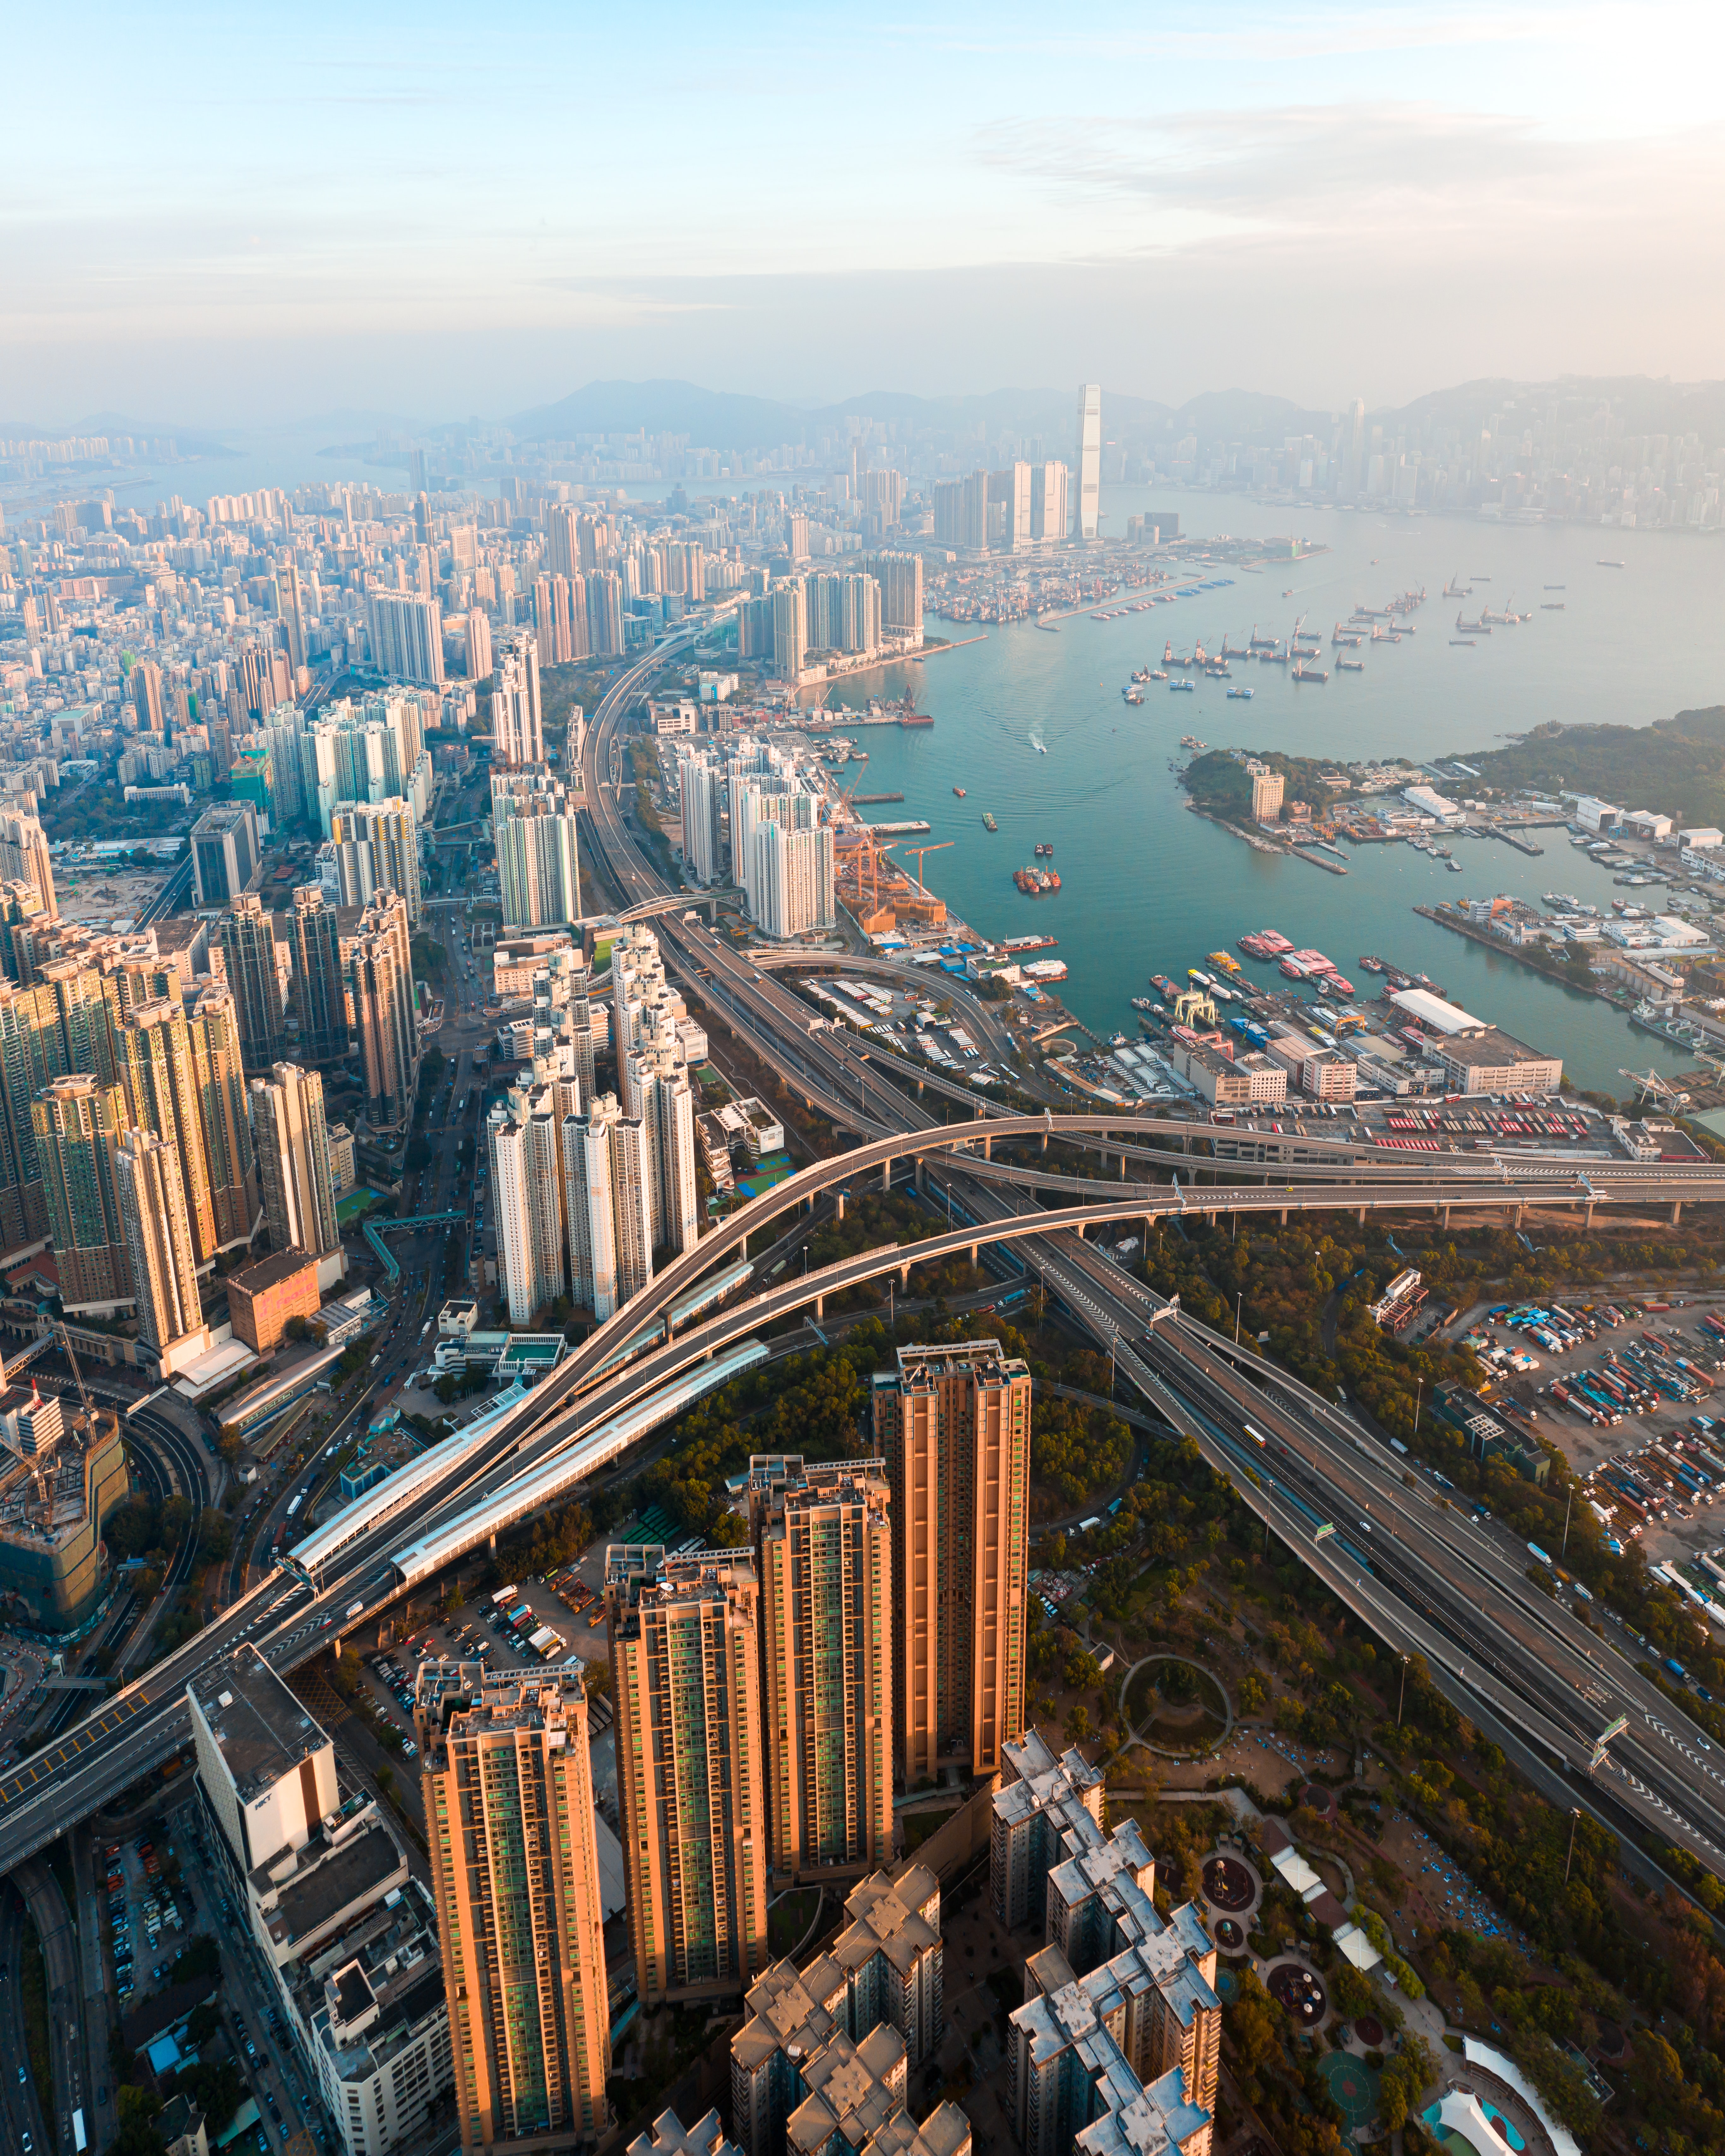 Популярные заставки и фоны Гонконг на компьютер